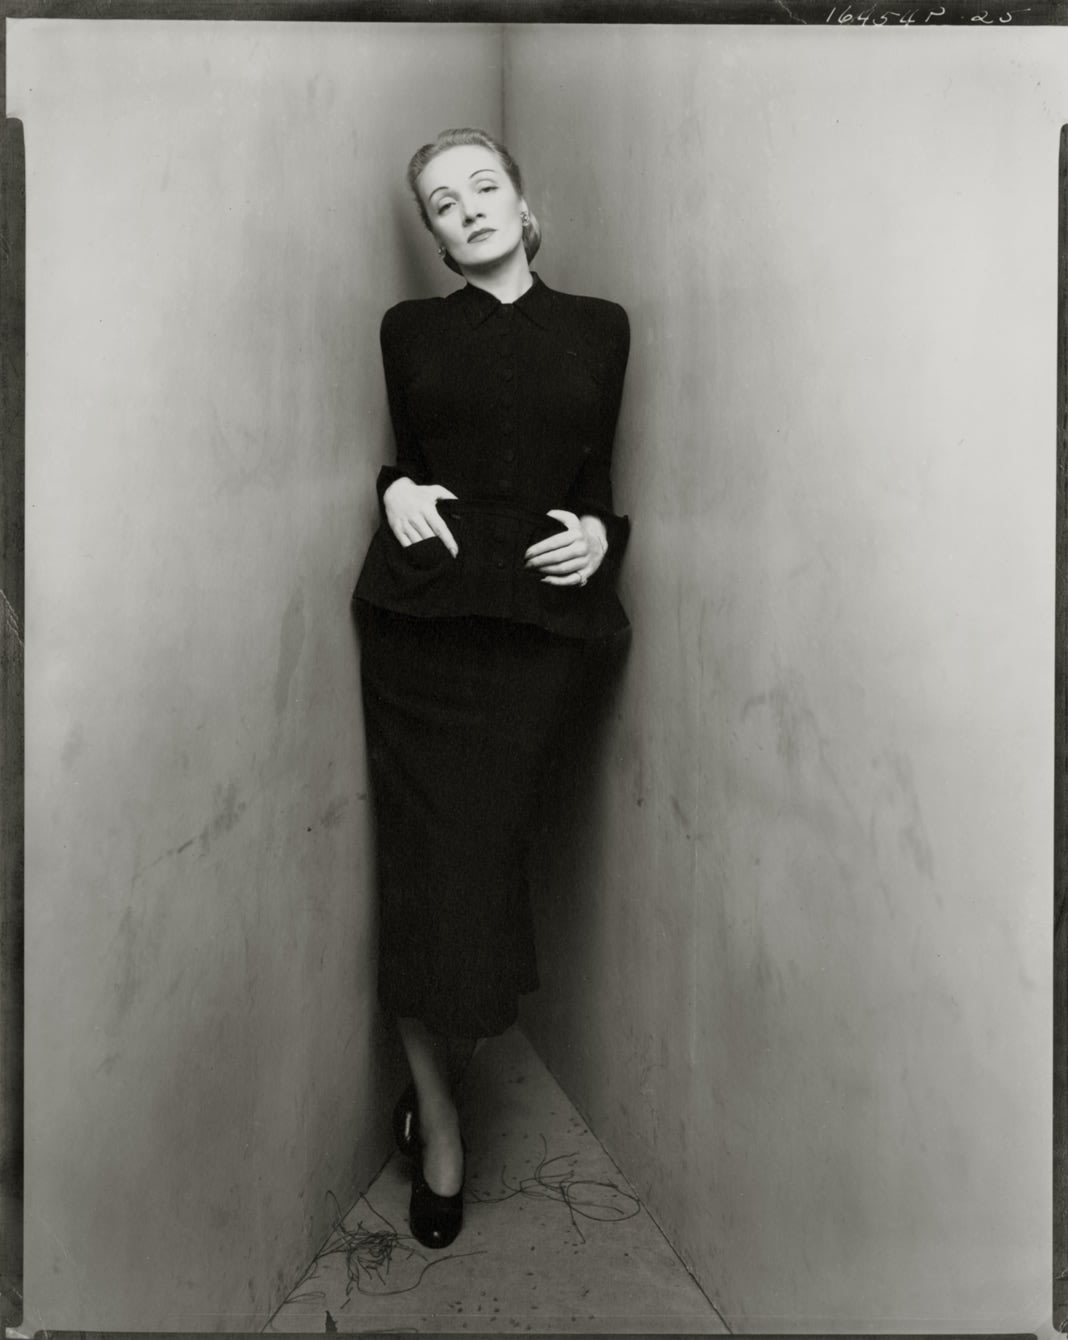 Irving Penn, Marlene Dietrich, Corner Portrait, New York, December 23, 1948